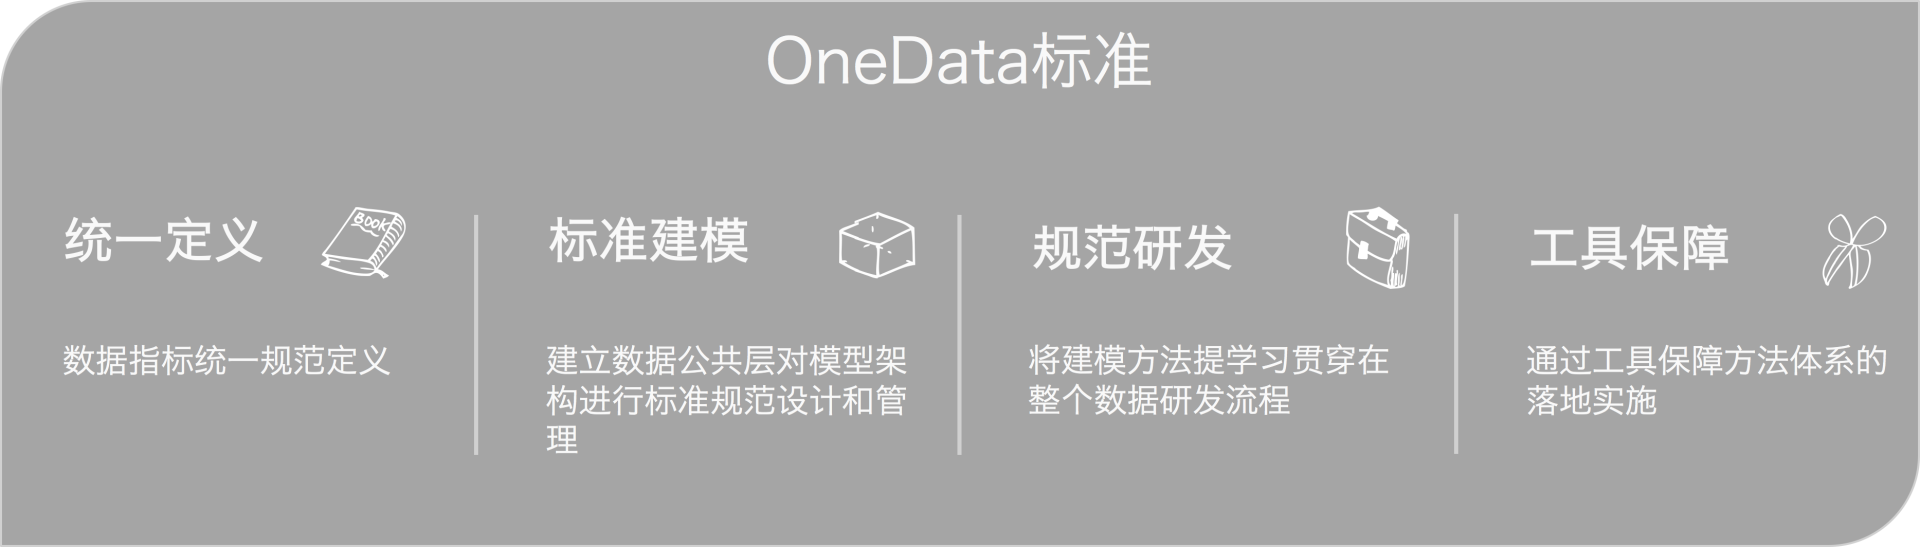 图1 OneData标准